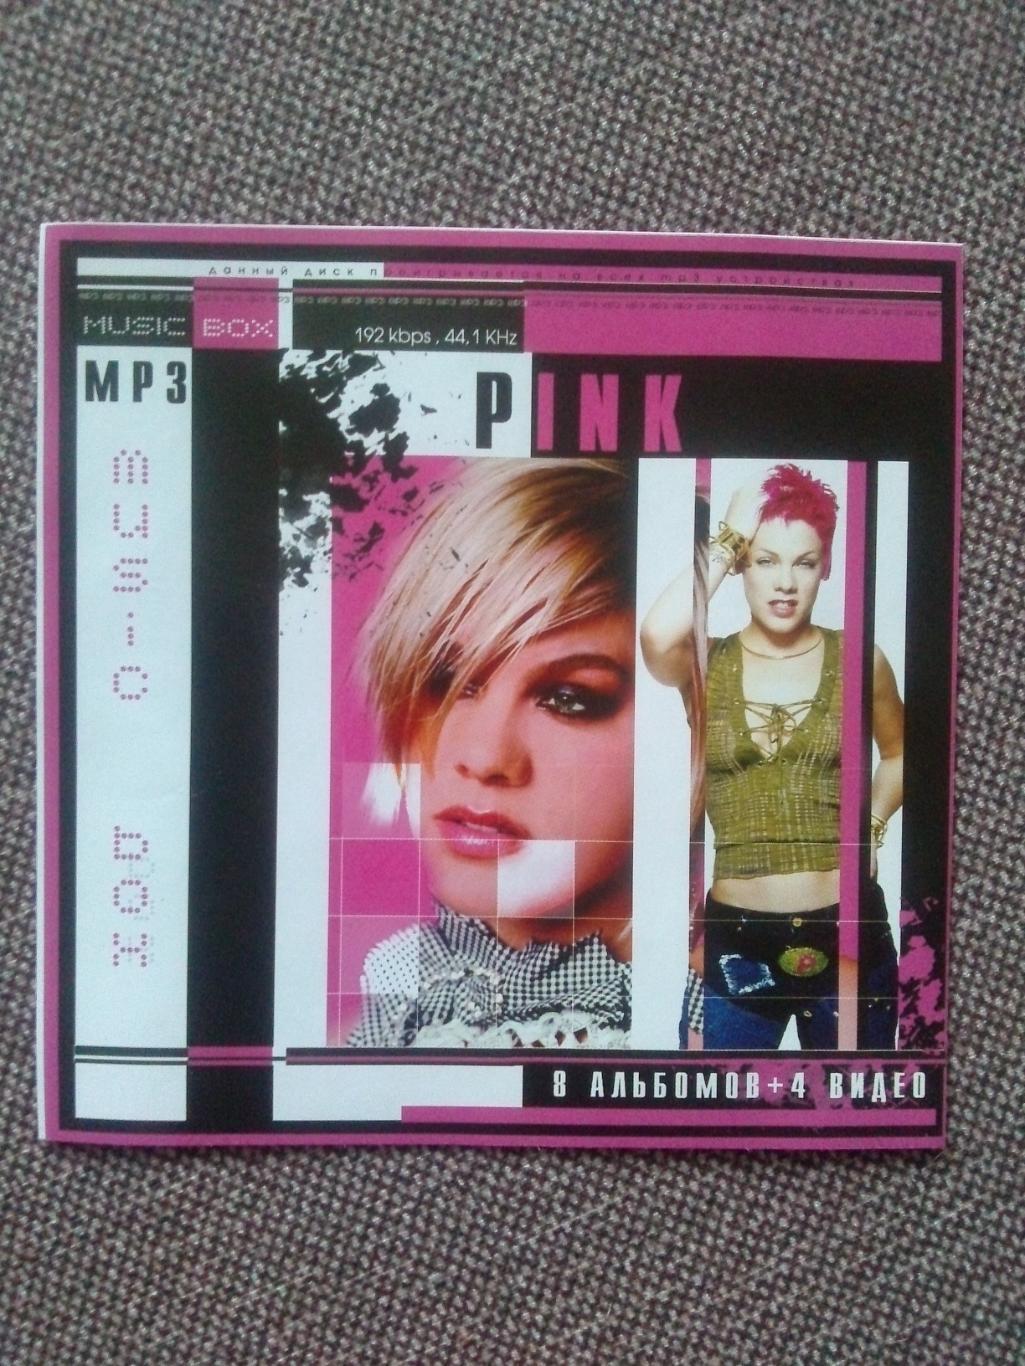 MP - 3 CD диск :Pink2000 - 2006 гг. (10 альбомов + 4 видео) лицензия Рок